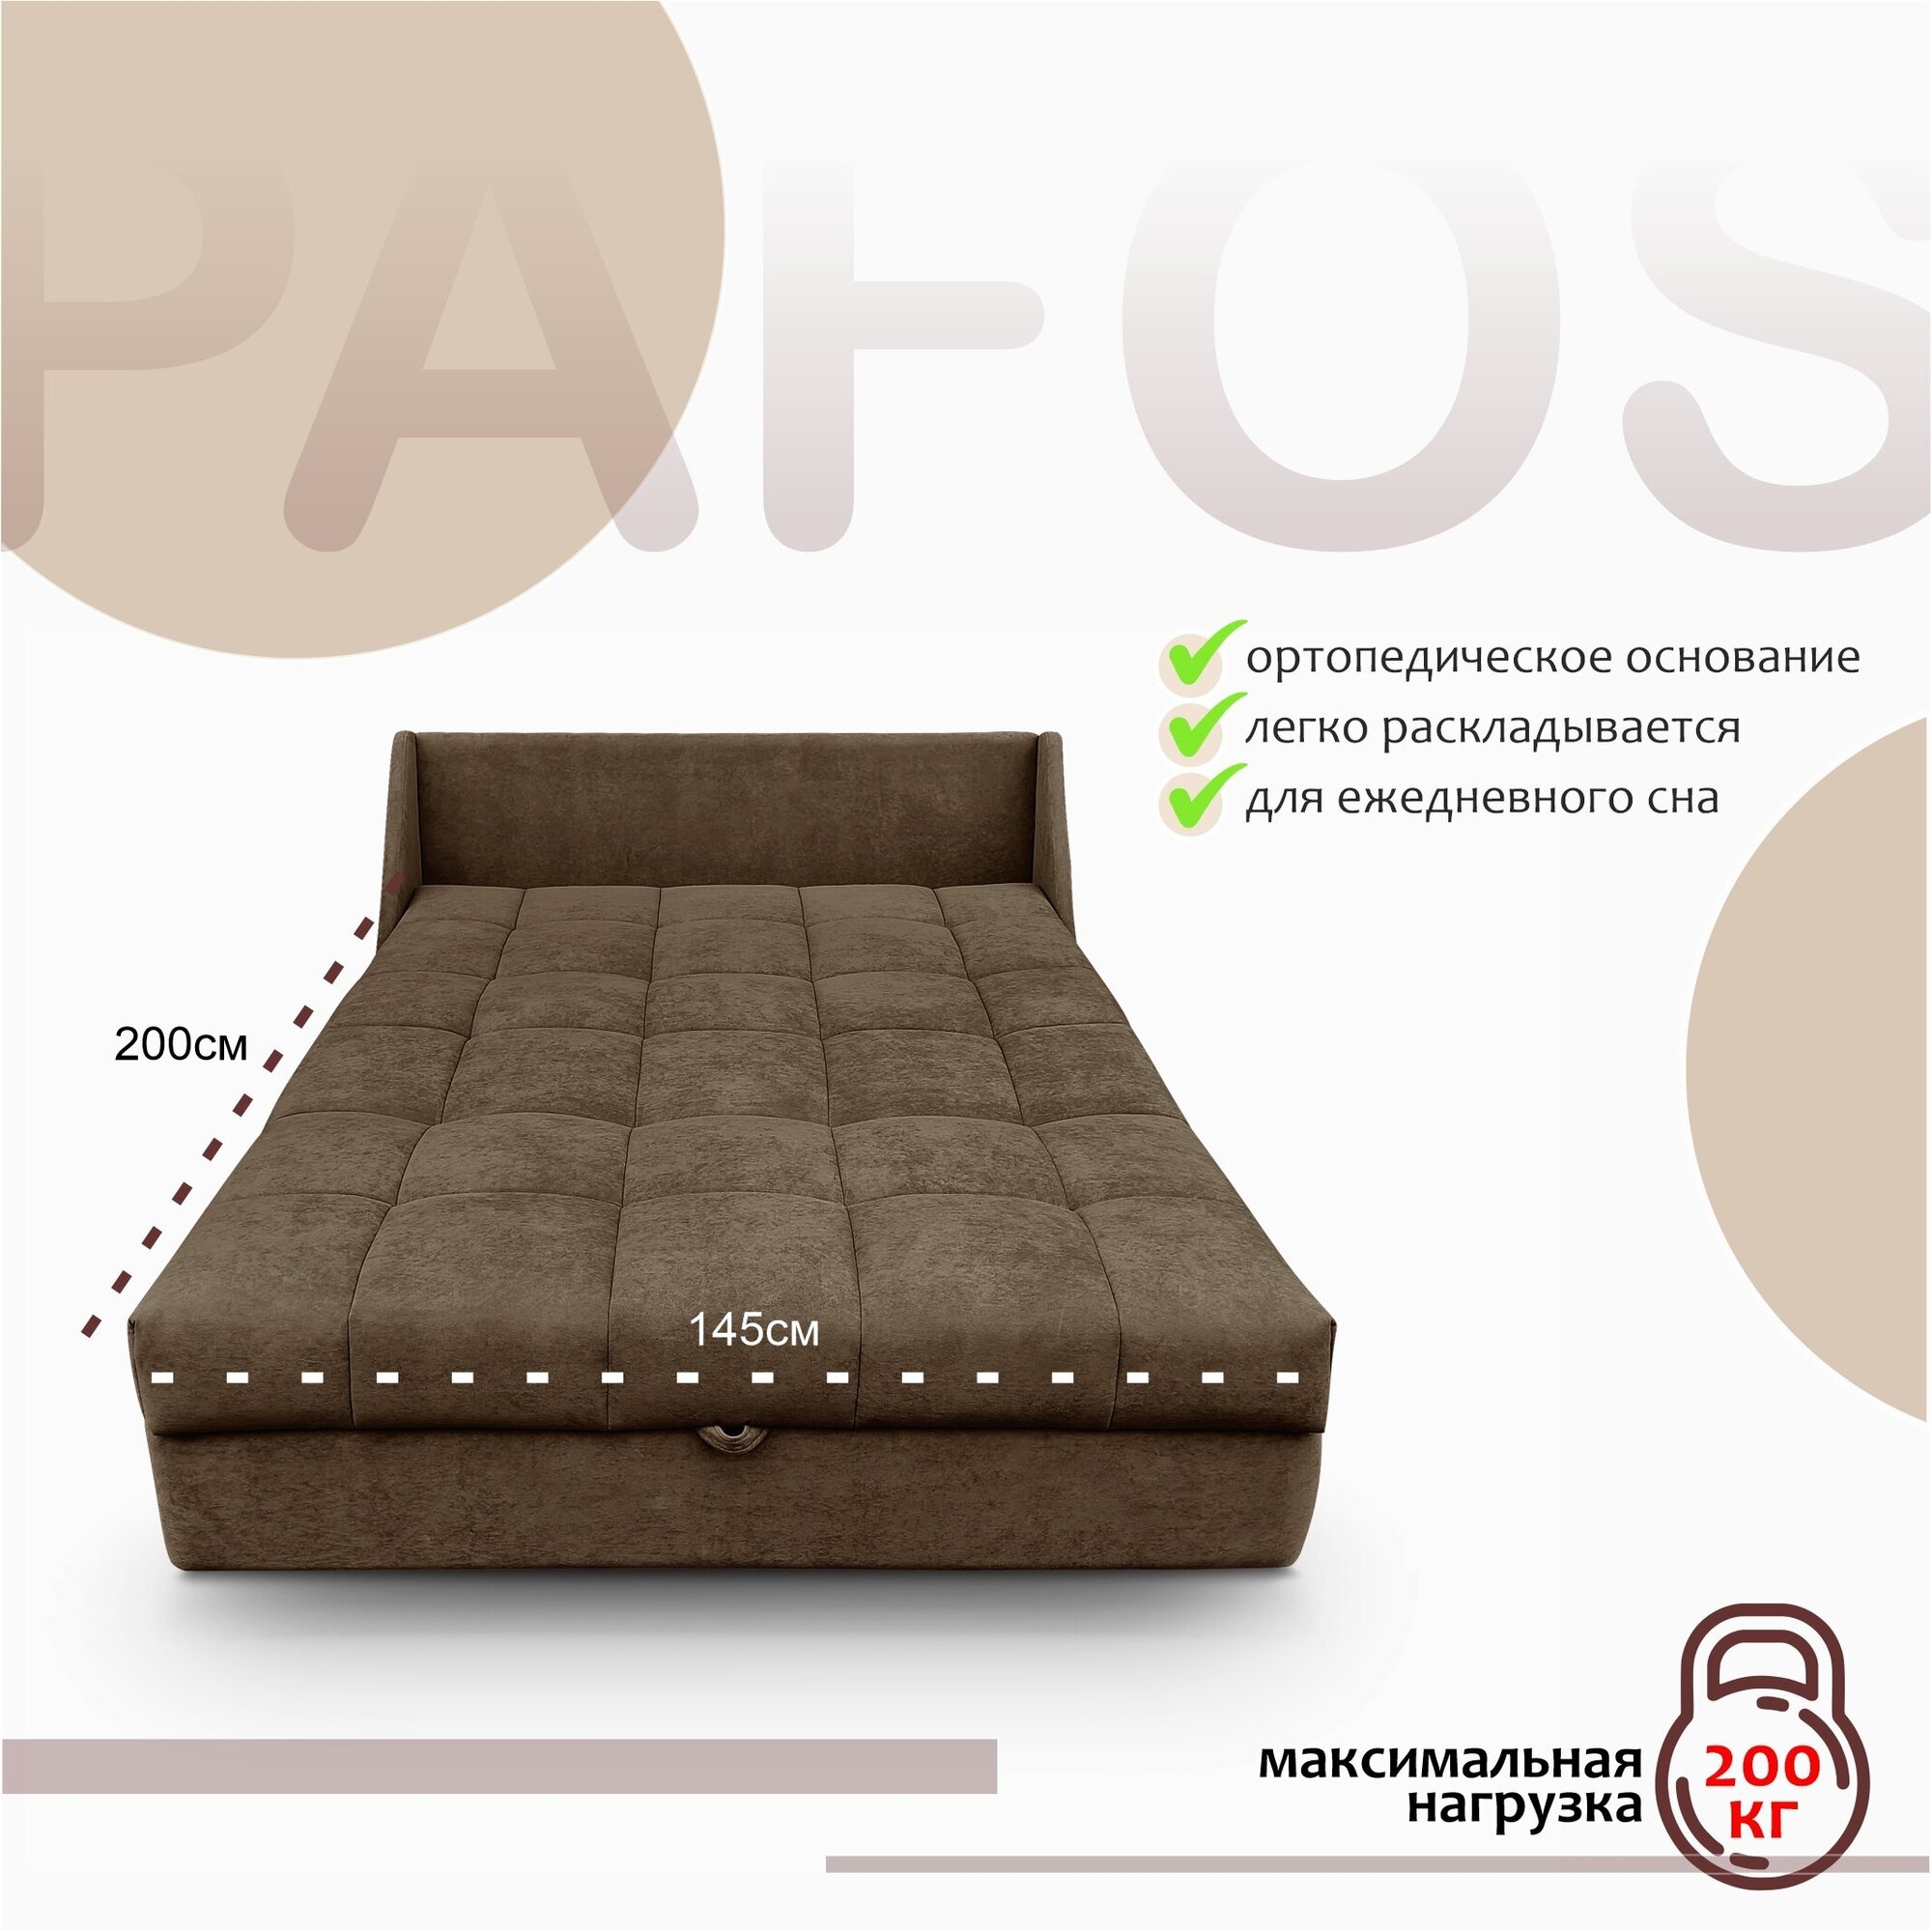 Пафос - диван-кровать Пафос (коричневый) с подушками, механизм аккордеон, без подлокотников, механизм аккордеон, 145х115х87 см